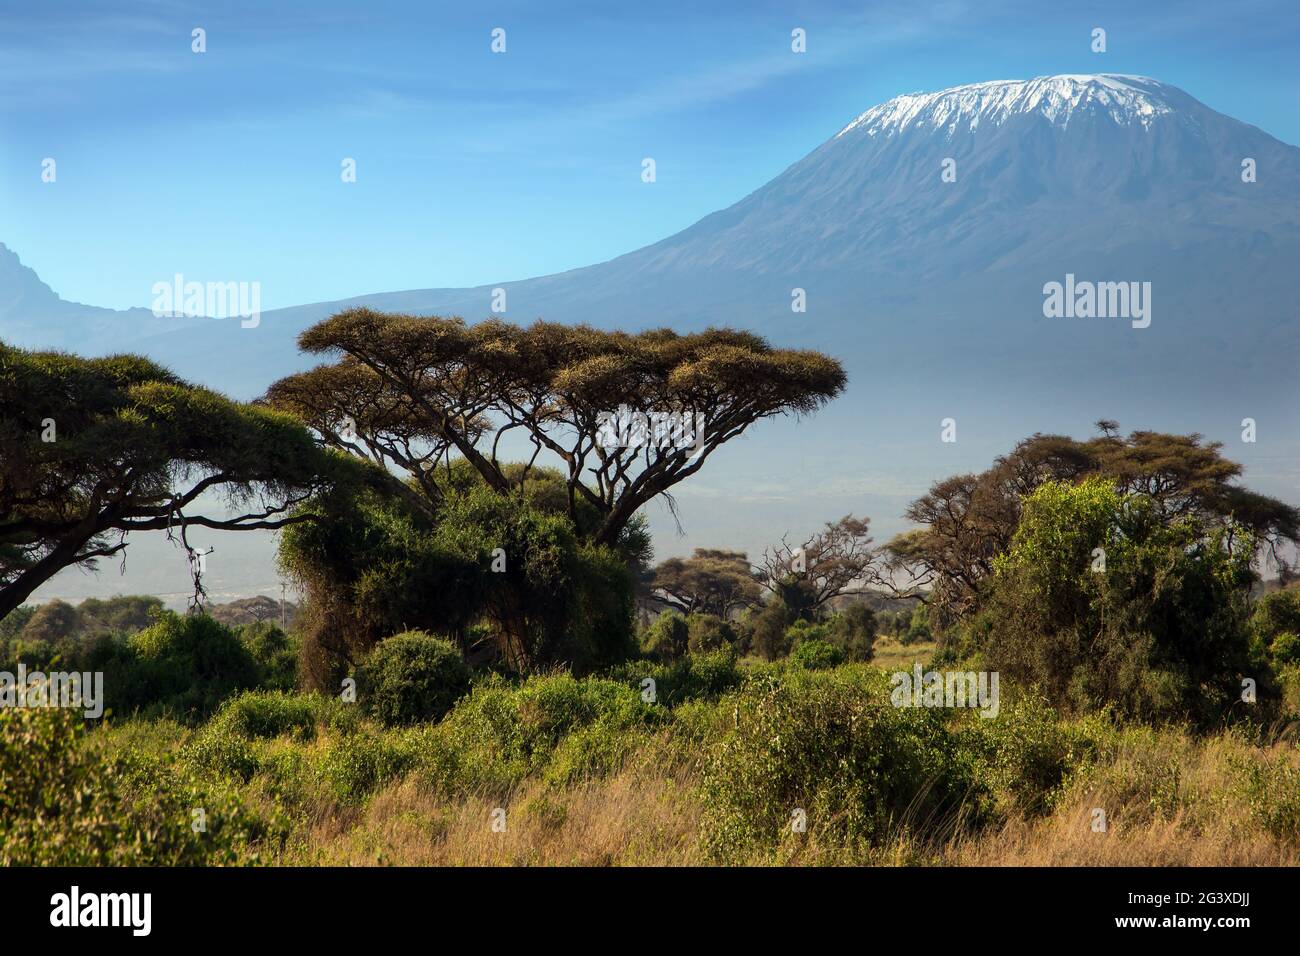 The snow peak of Kilimanjaro Stock Photo